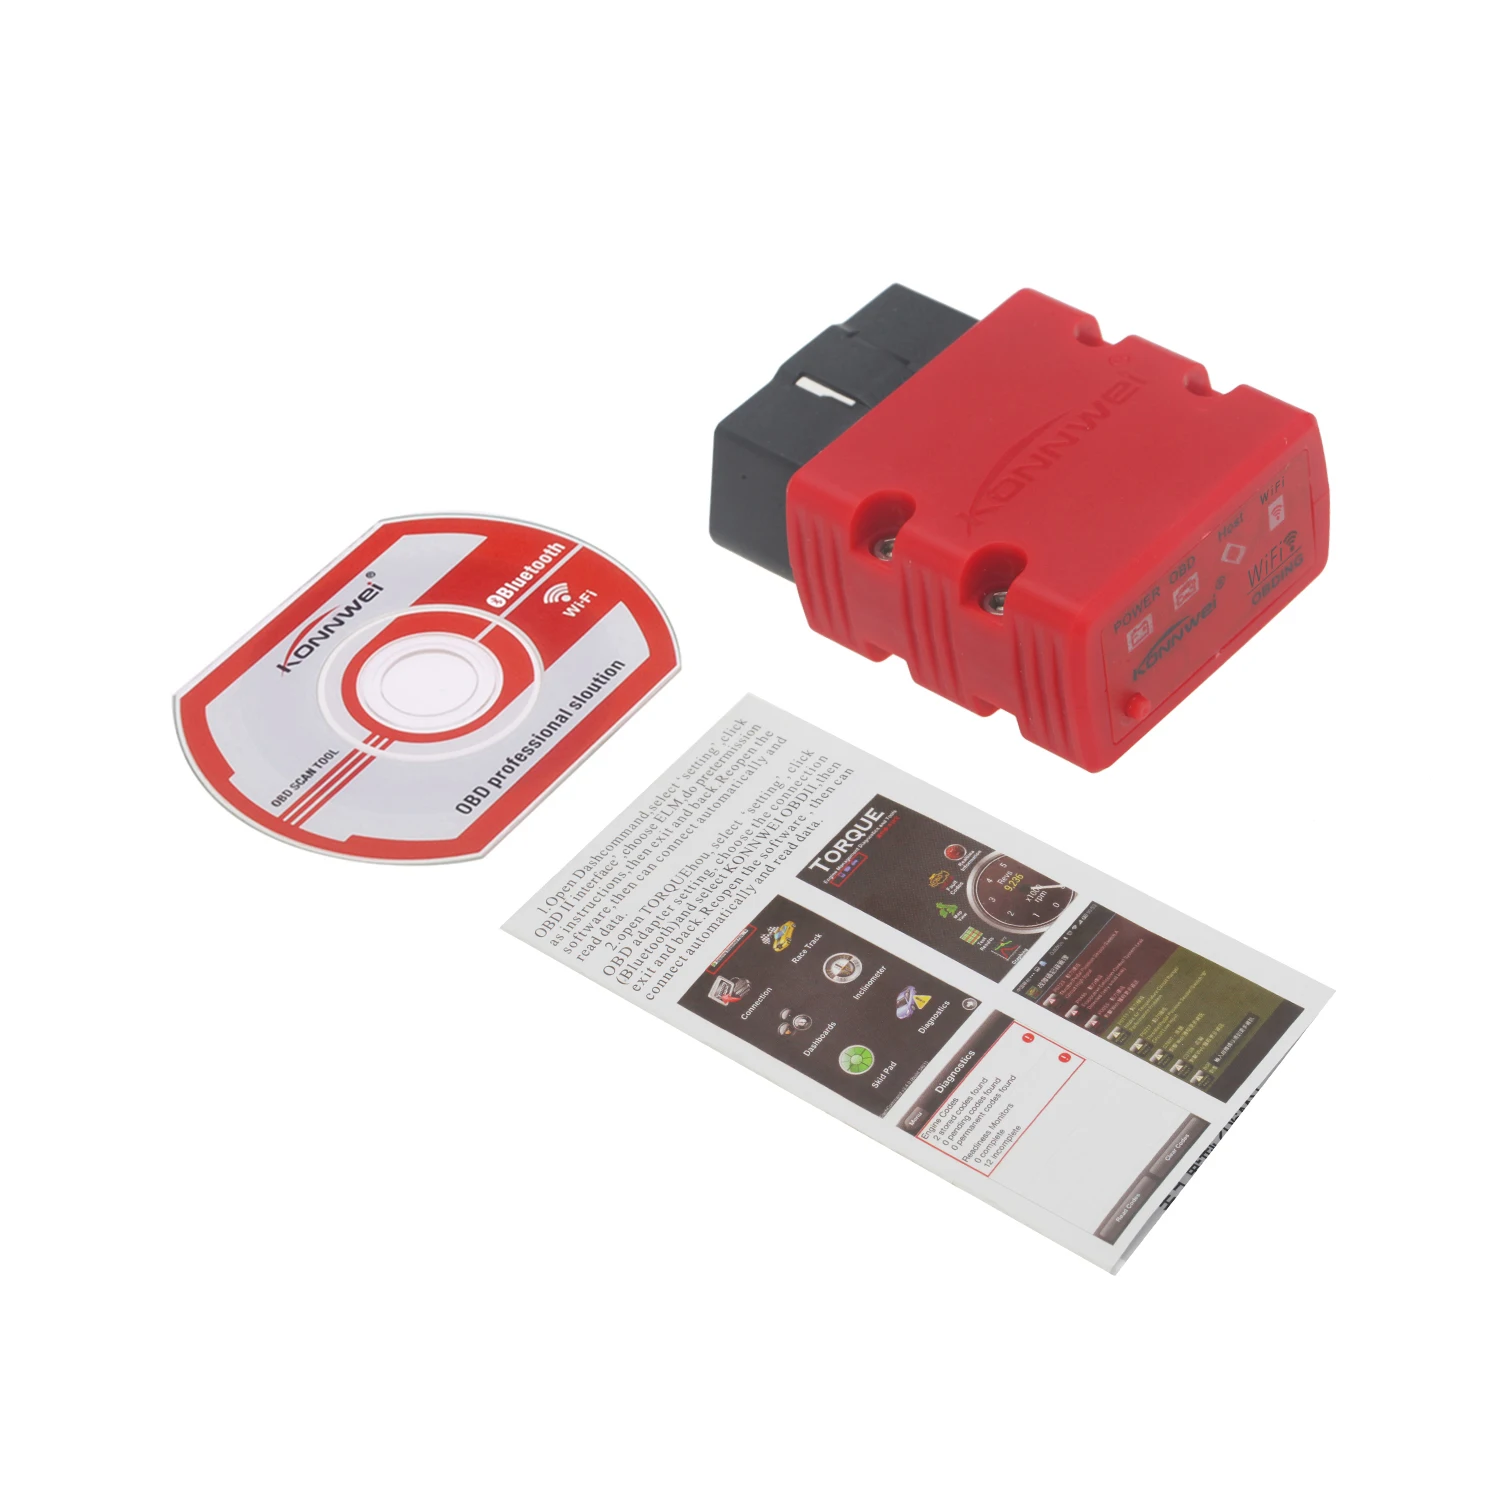 Wifi версия автомобиля OBD2 сканер V1.5 Bluetooth автоматический сканер мини OBDII код ридер для Android телефон сканер инструмент Высокое качество - Цвет: Красный